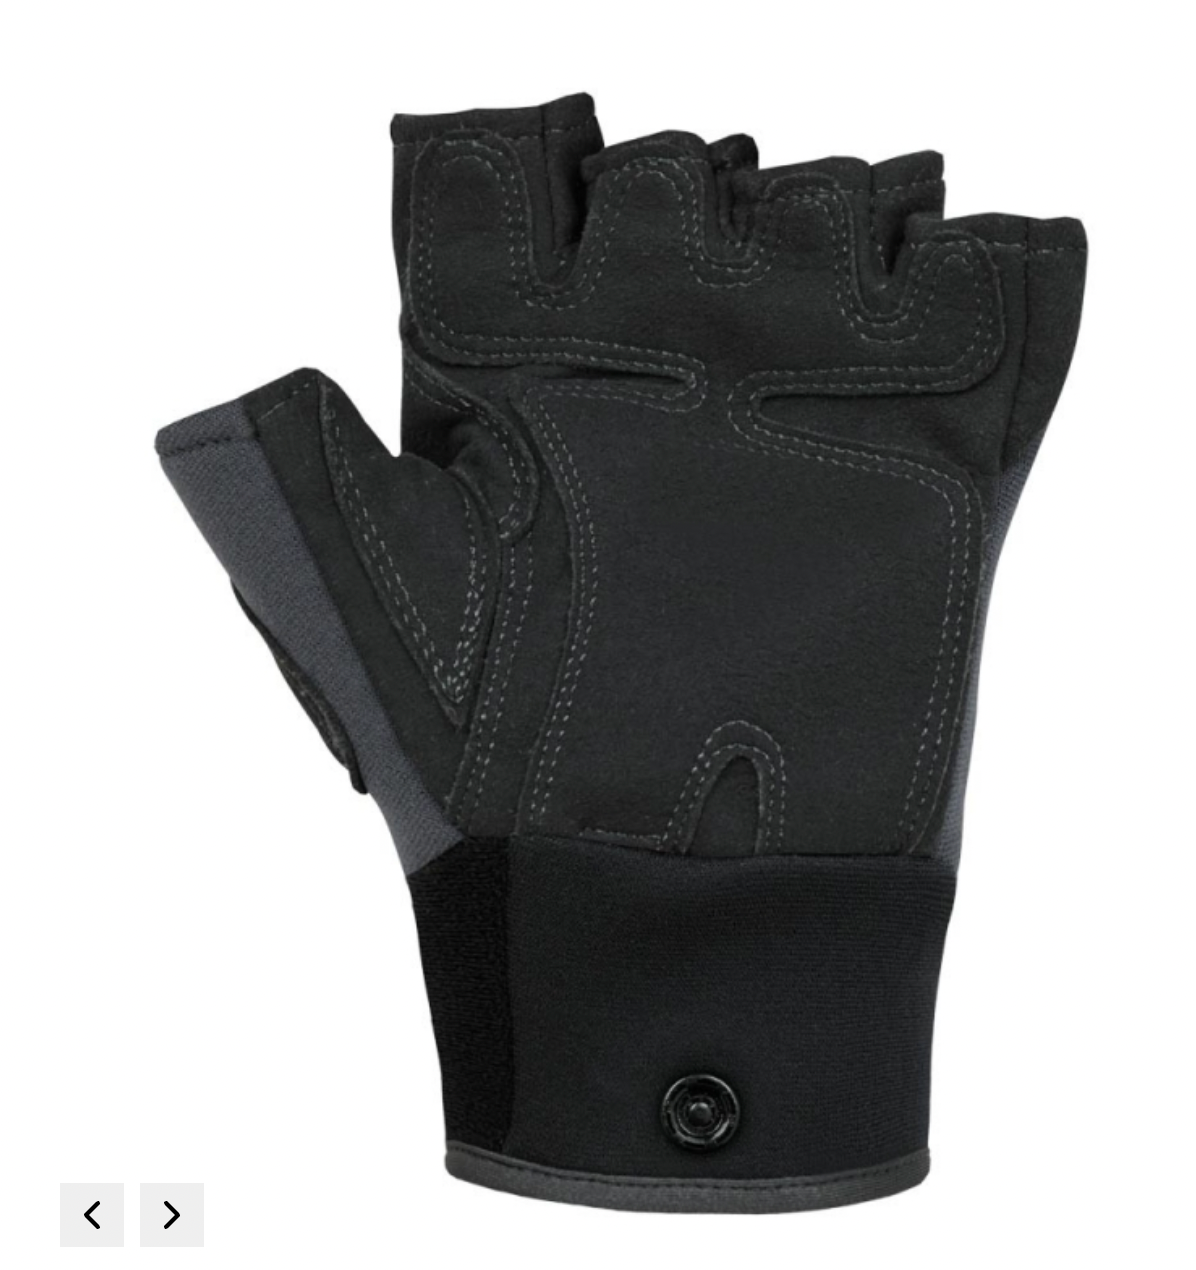 Palm Clutch gloves